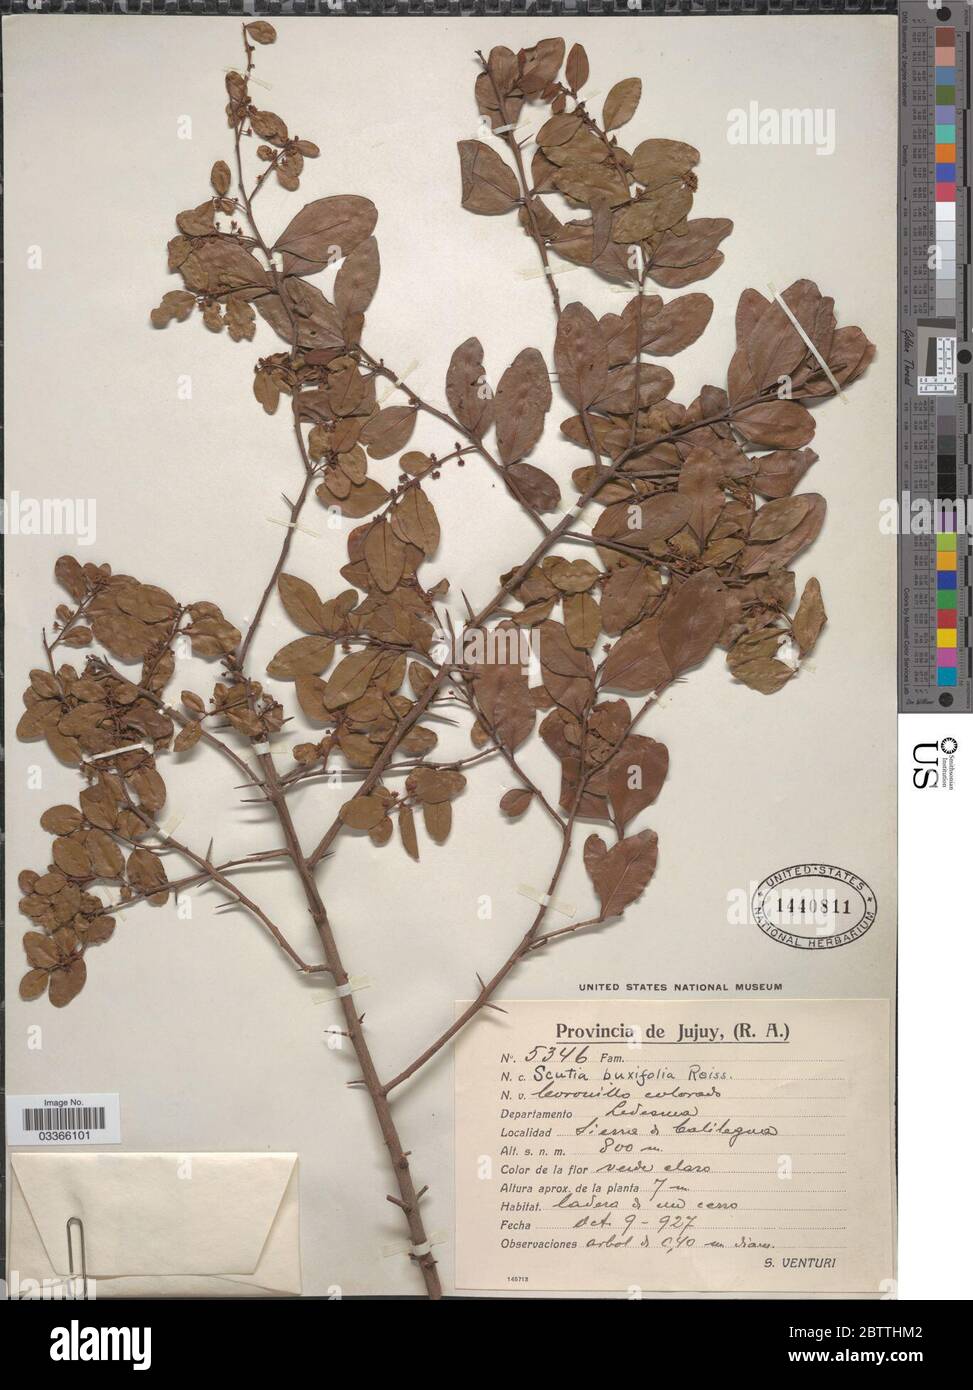 Scutia buxifolia Reissek. Stock Photo